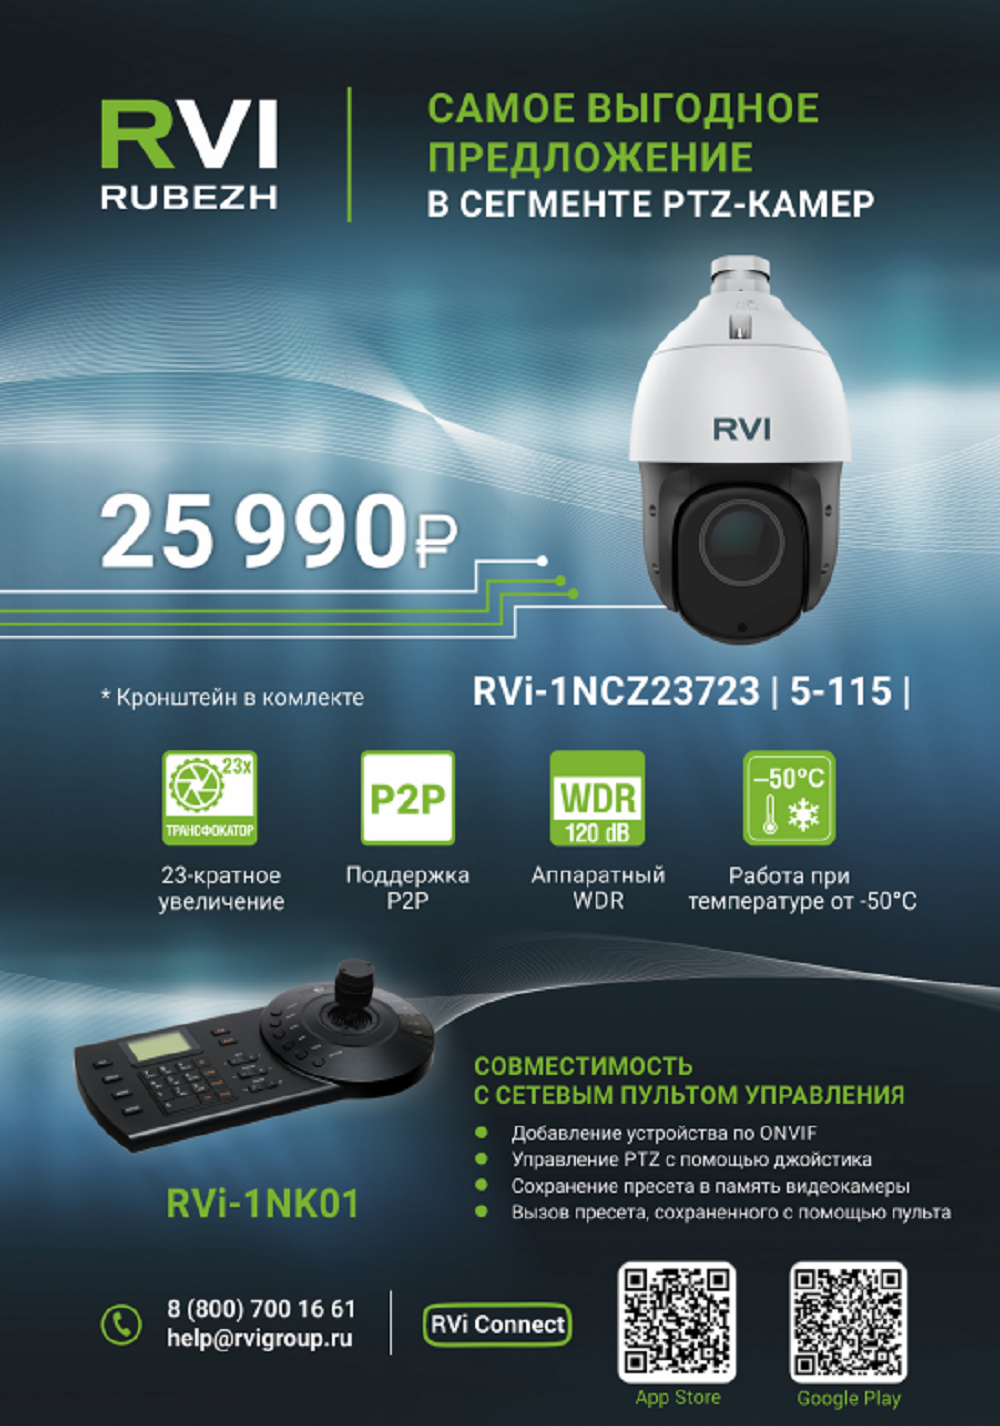 Новинка от RVi ! Видеокамера RVi-1NCZ23723 (5-115)